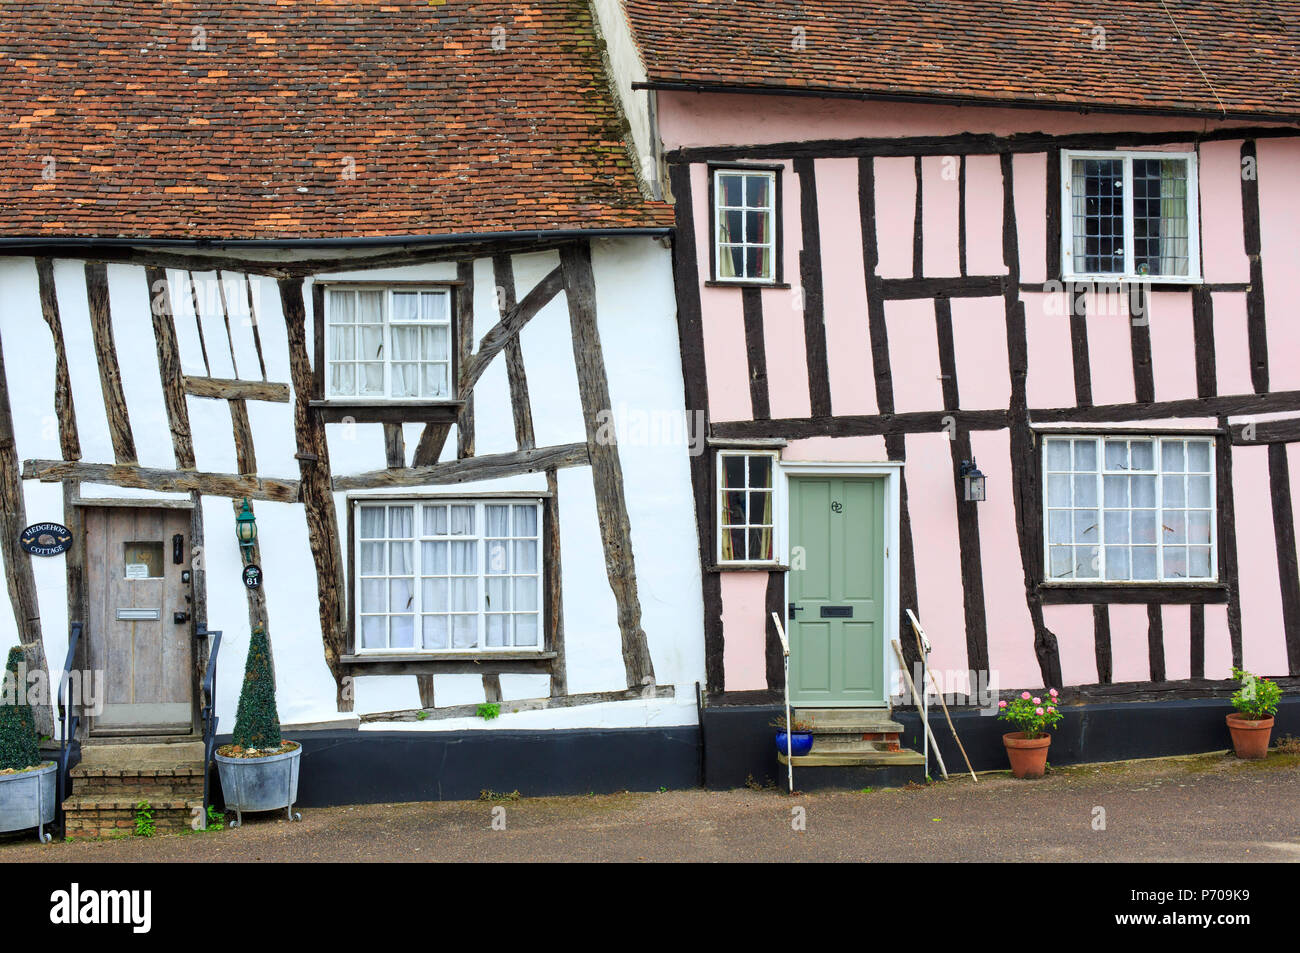 Inglaterra, Suffolk, Lavenham, antiguas casas de entramado de madera en la aldea. Foto de stock